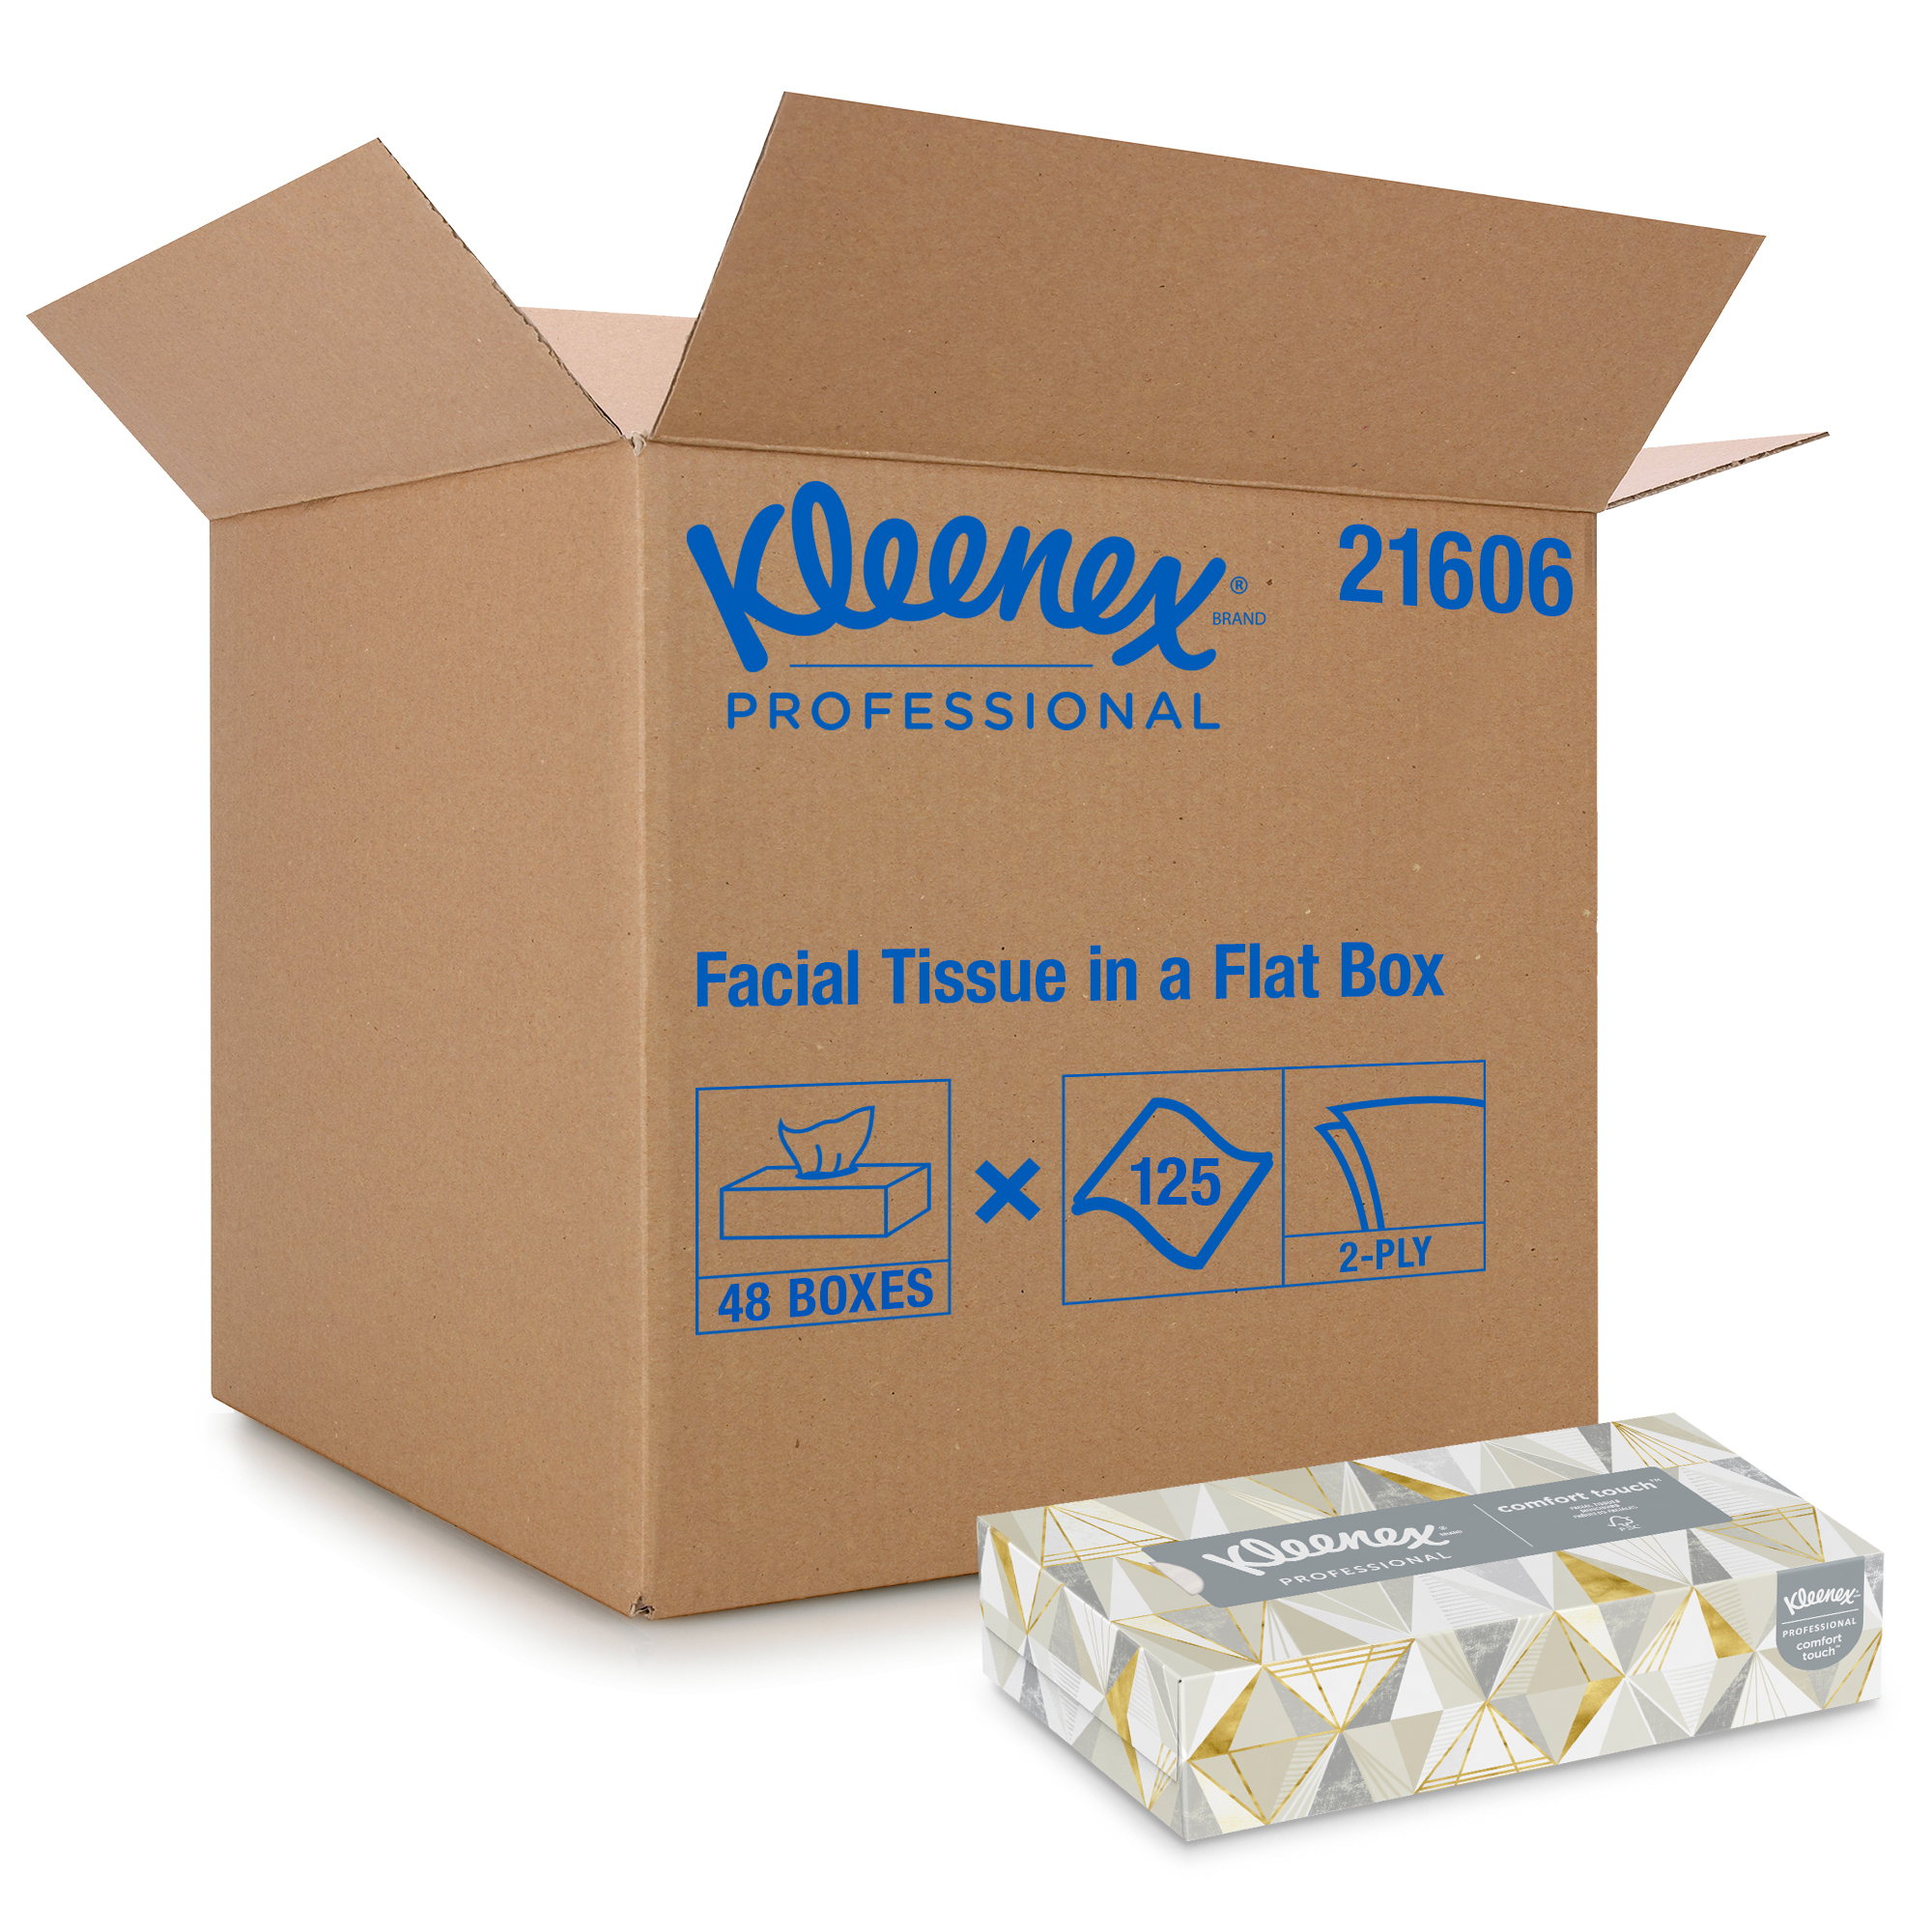 FACIAL TISSUE KLEENEX FLAT
BOX 2-PLY WHITE 48 BOXES OF
125